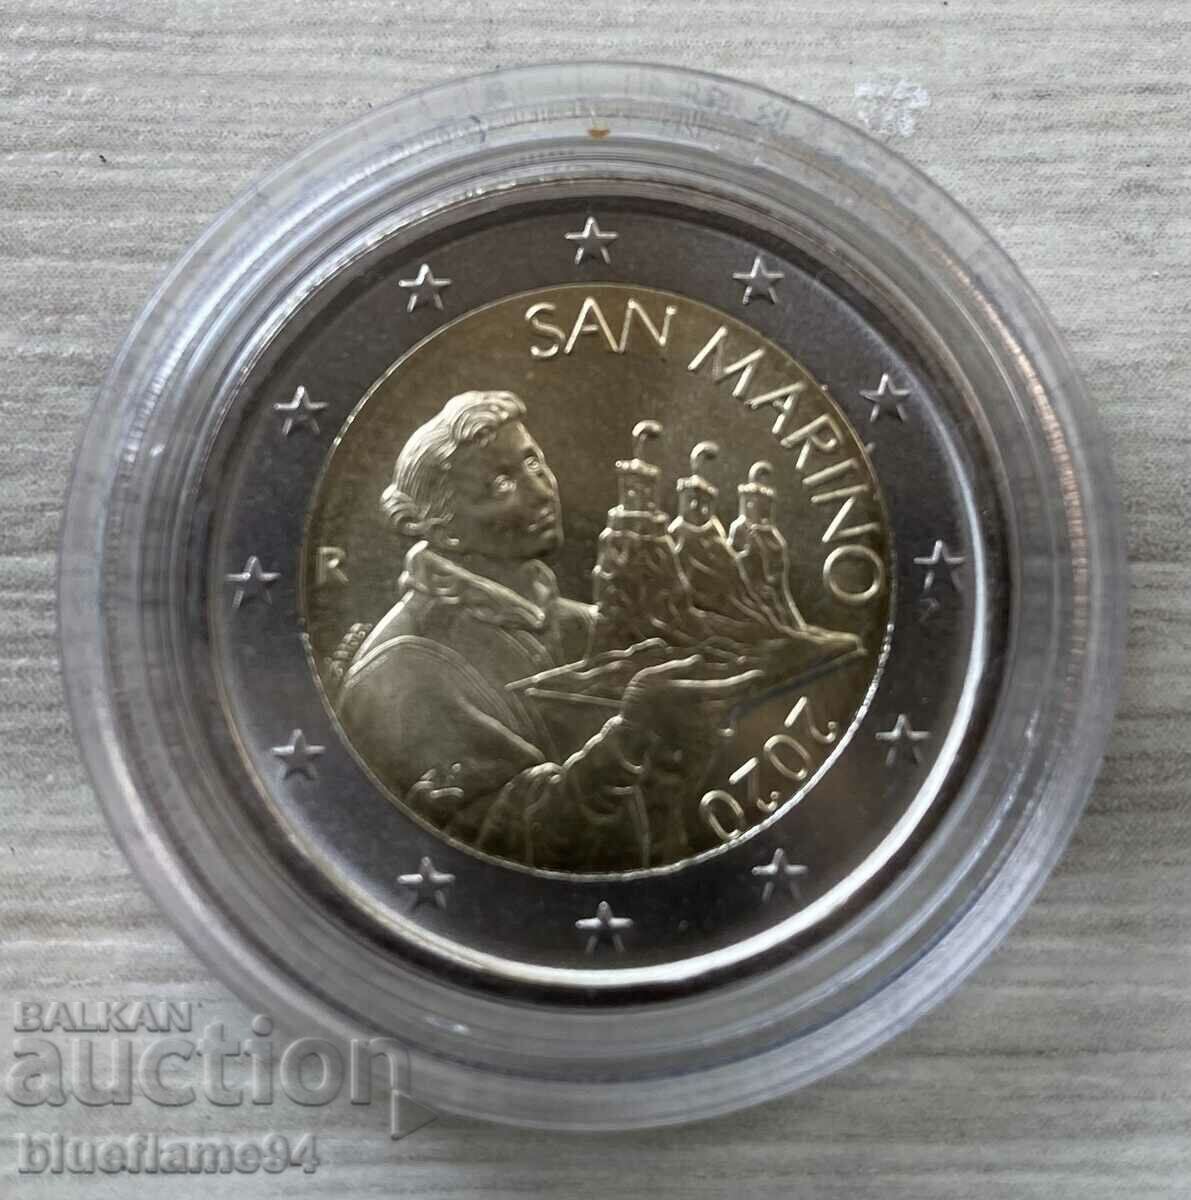 2 Euro San Marino 2020